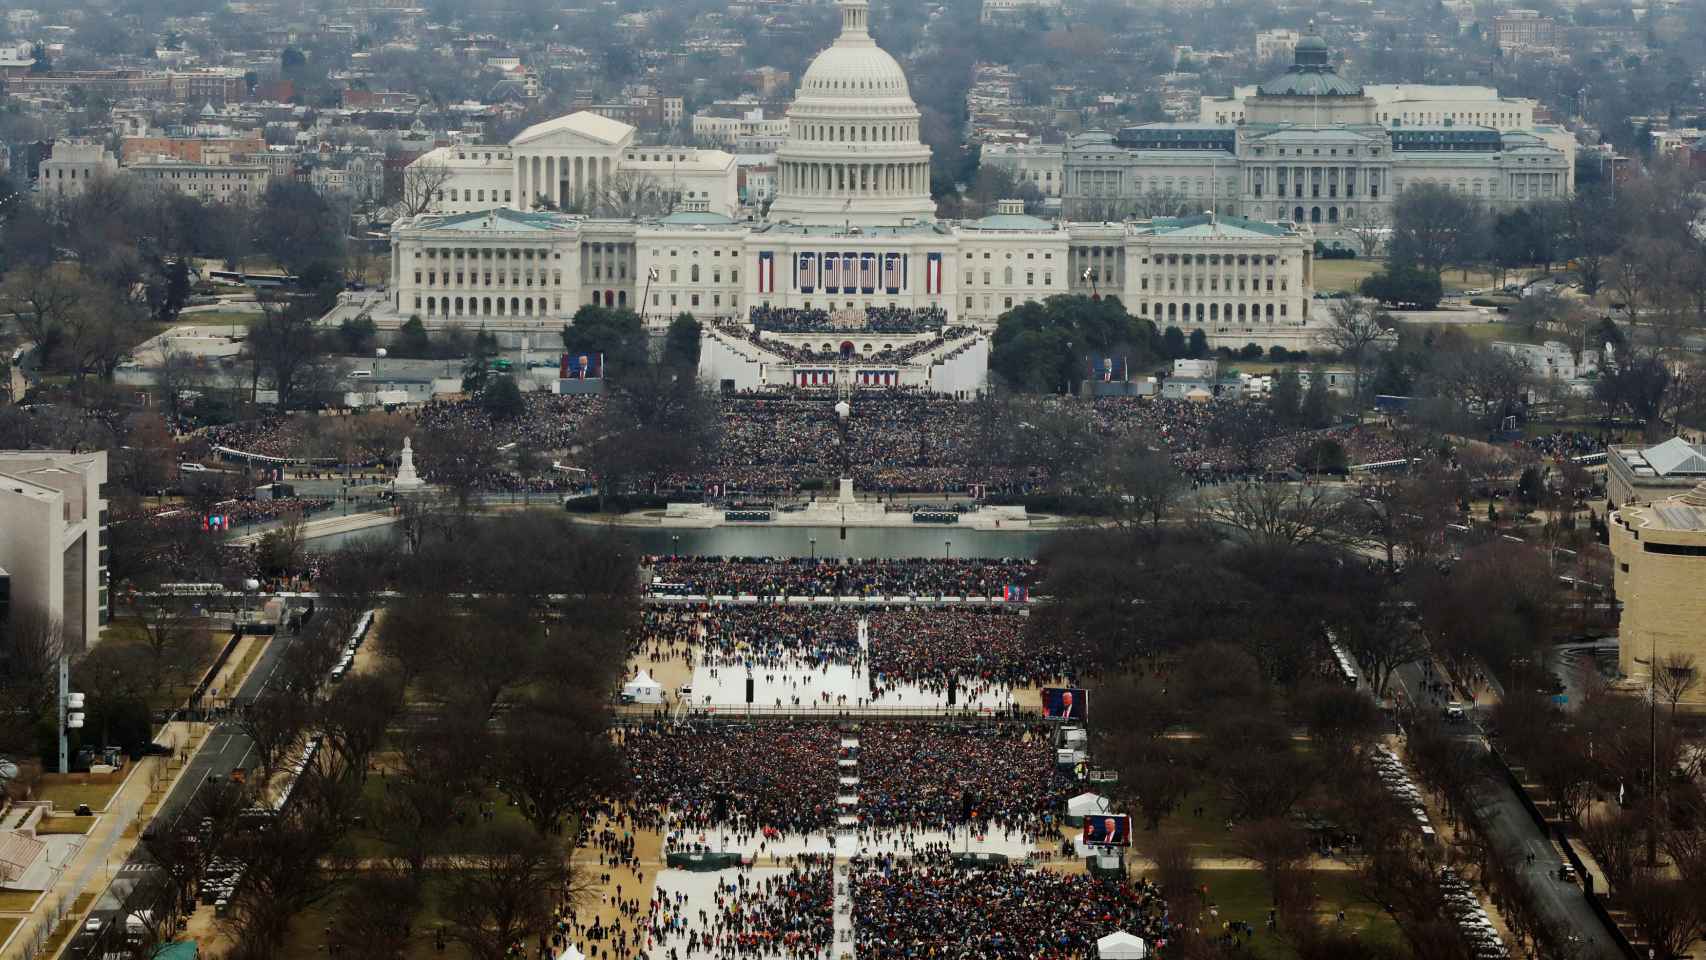 La vista aérea del Capitolio durante la investidura de Trump.